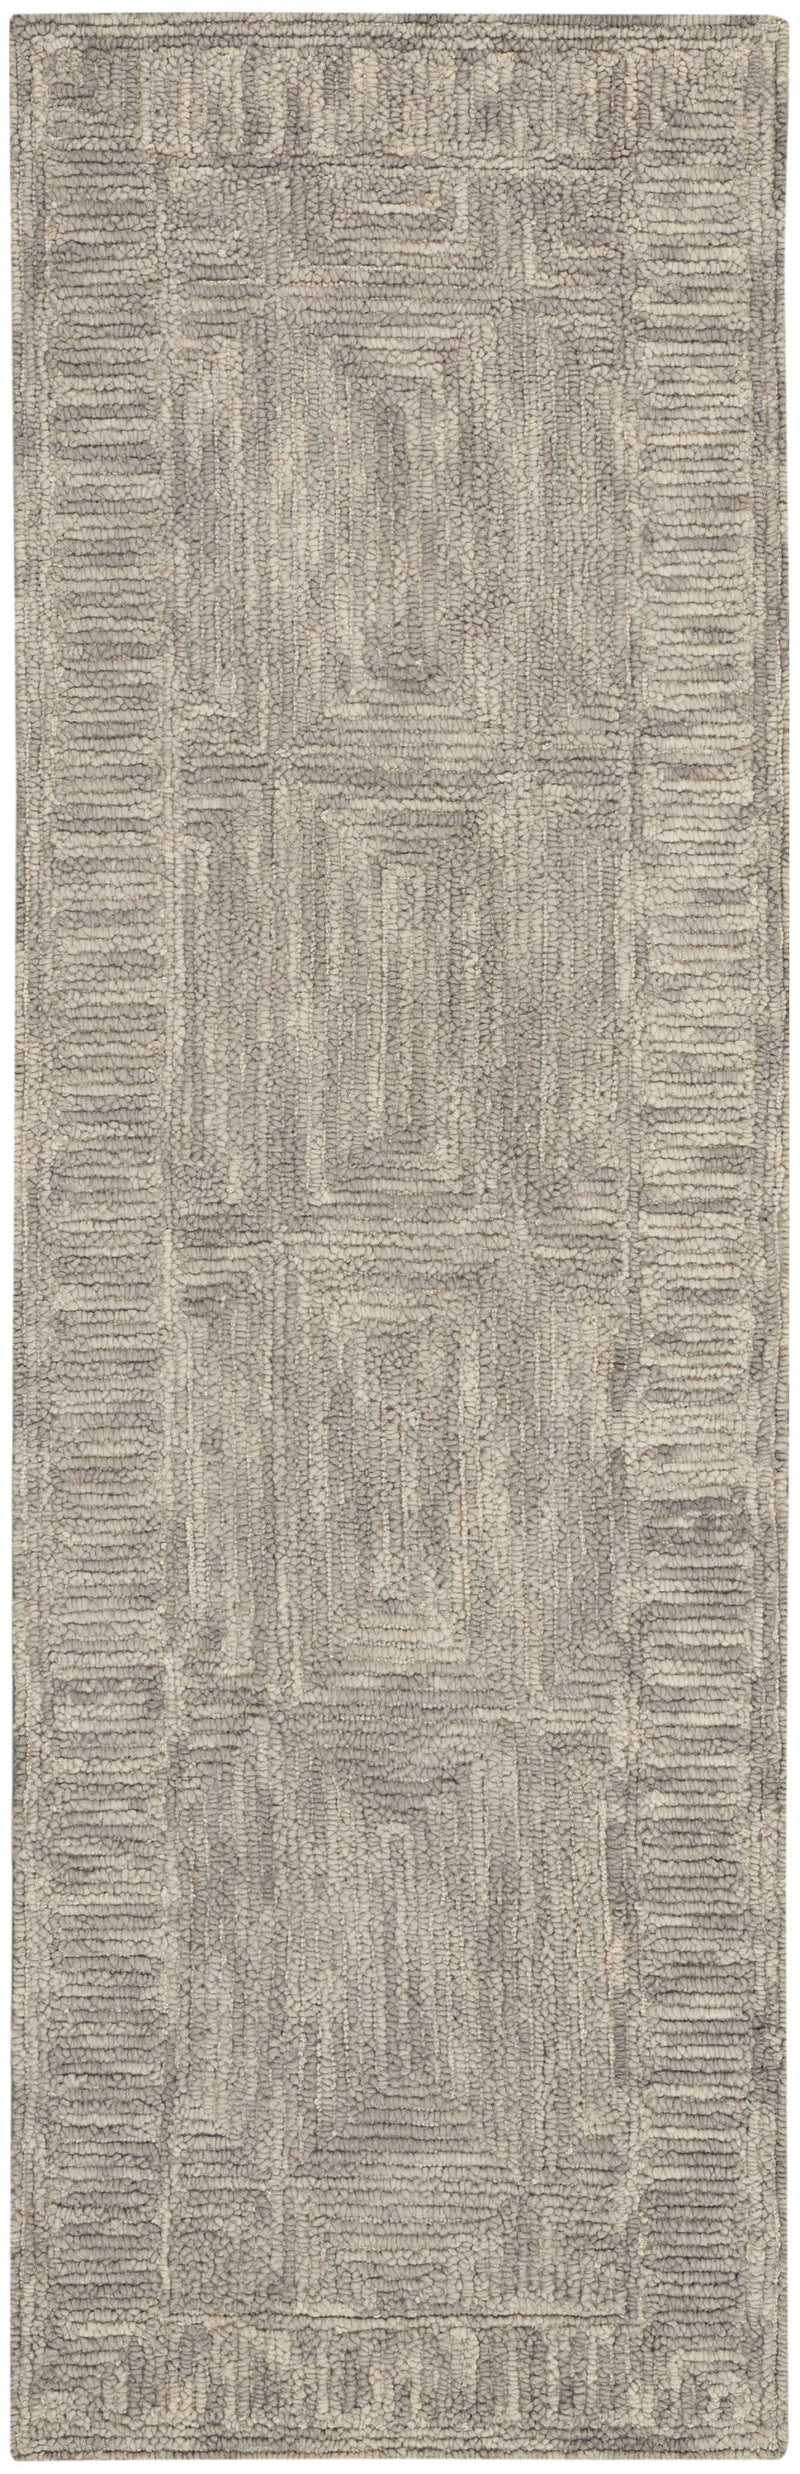 media image for colorado handmade grey rug by nourison 99446786685 redo 2 251